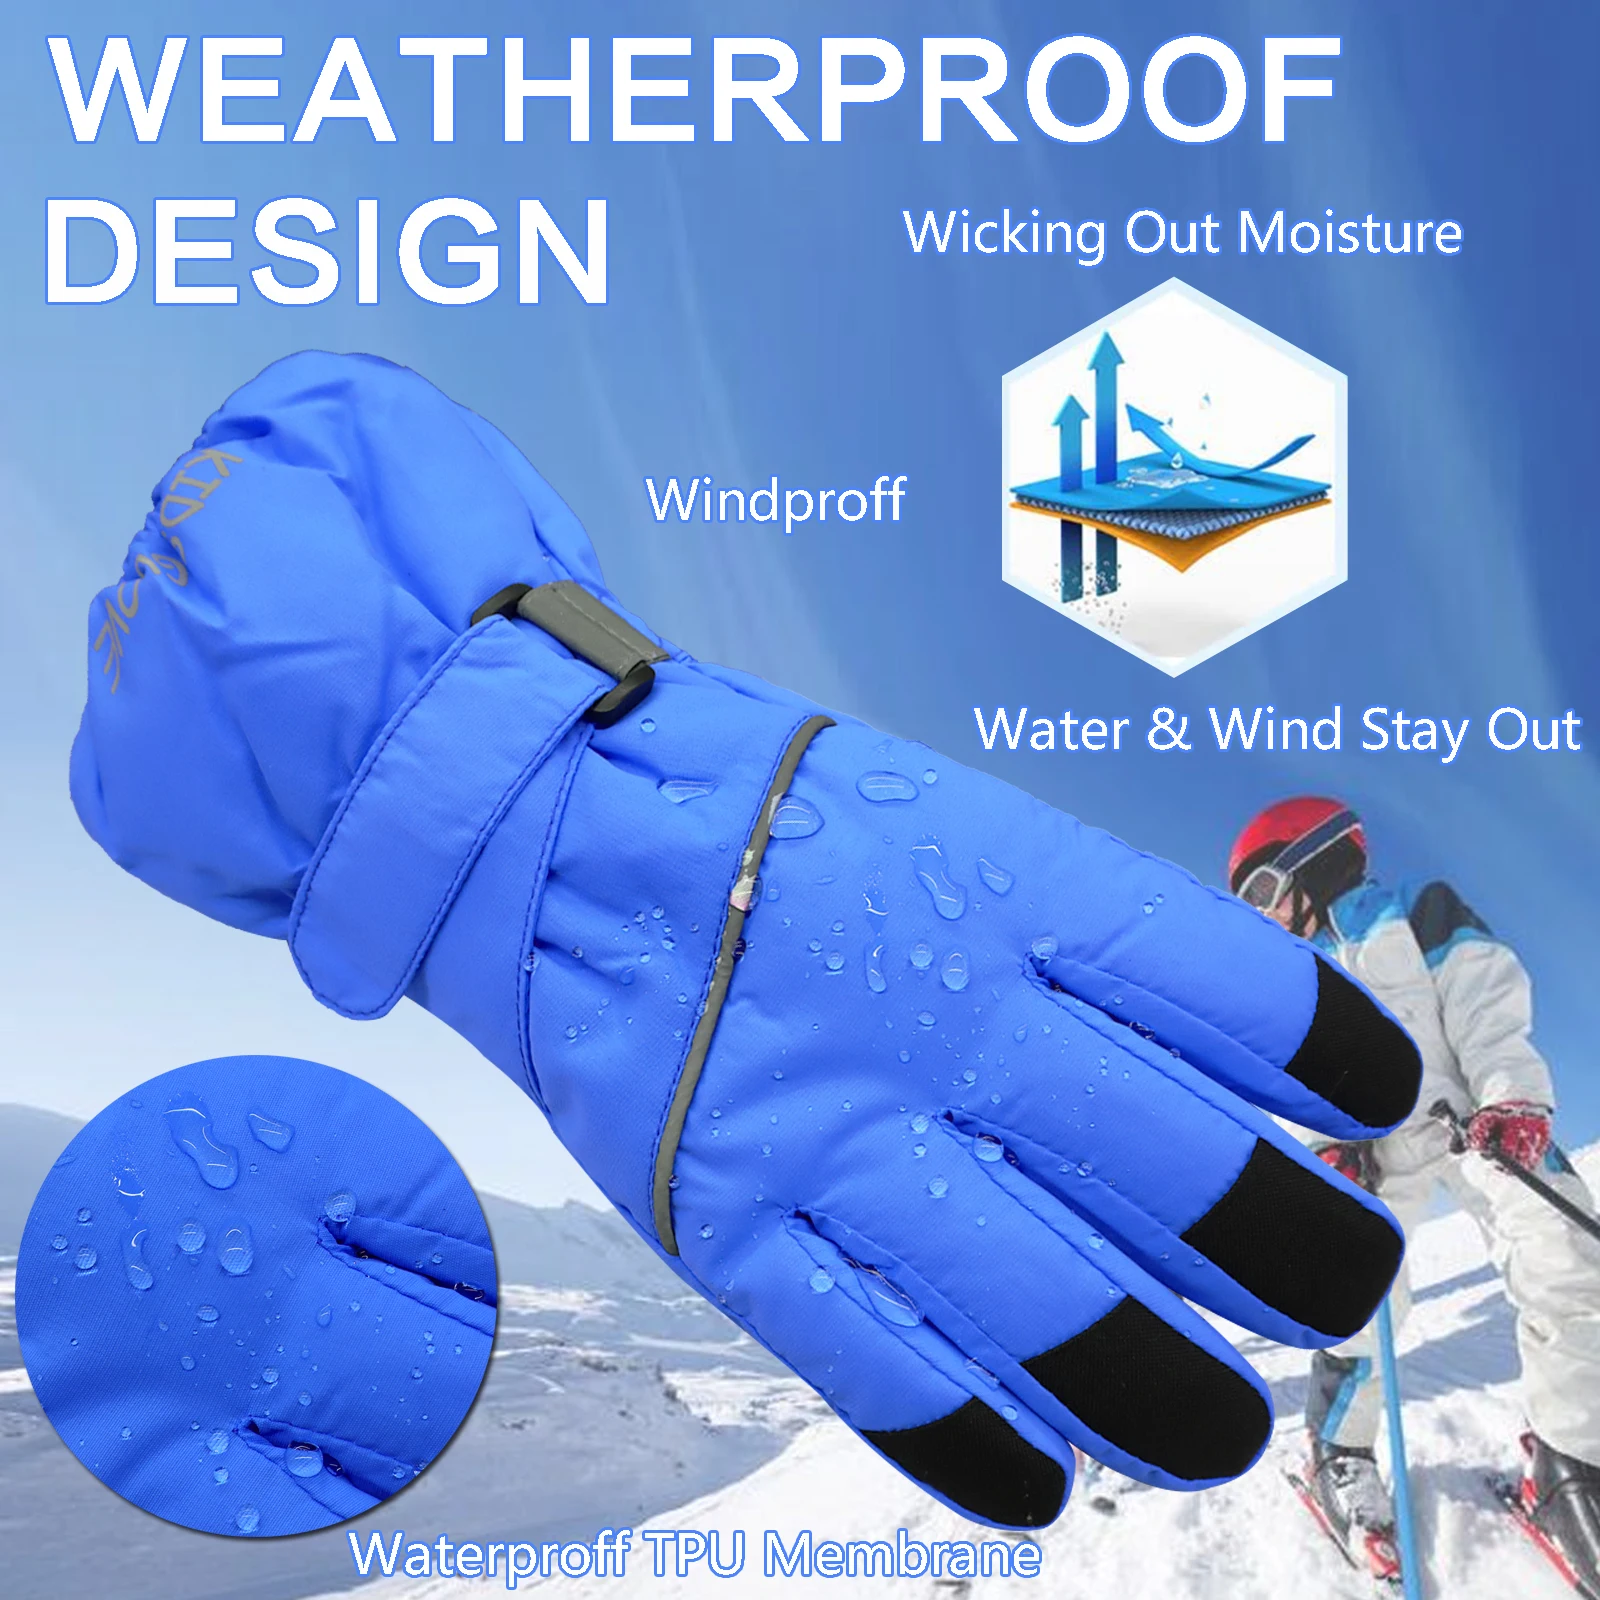 JenPen 4 pares de guantes de invierno para niños, guantes de nieve  impermeables y cálidos para niños, guantes de nieve unisex, guantes de  nieve para